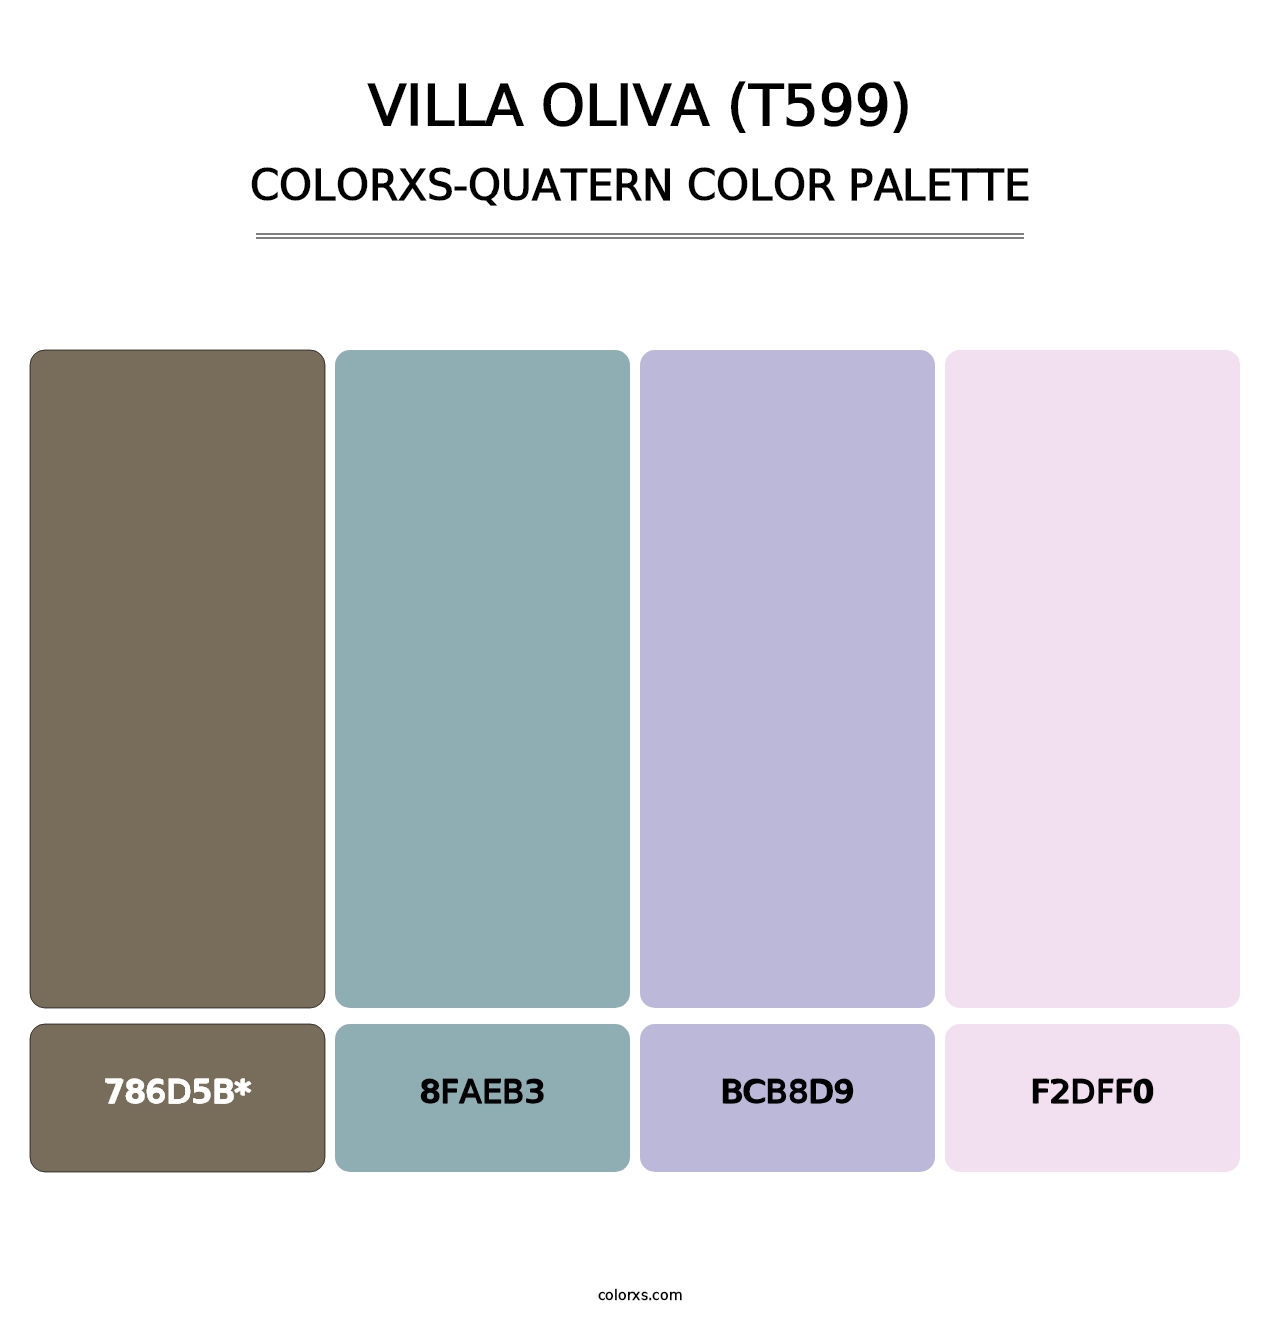 Villa Oliva (T599) - Colorxs Quatern Palette